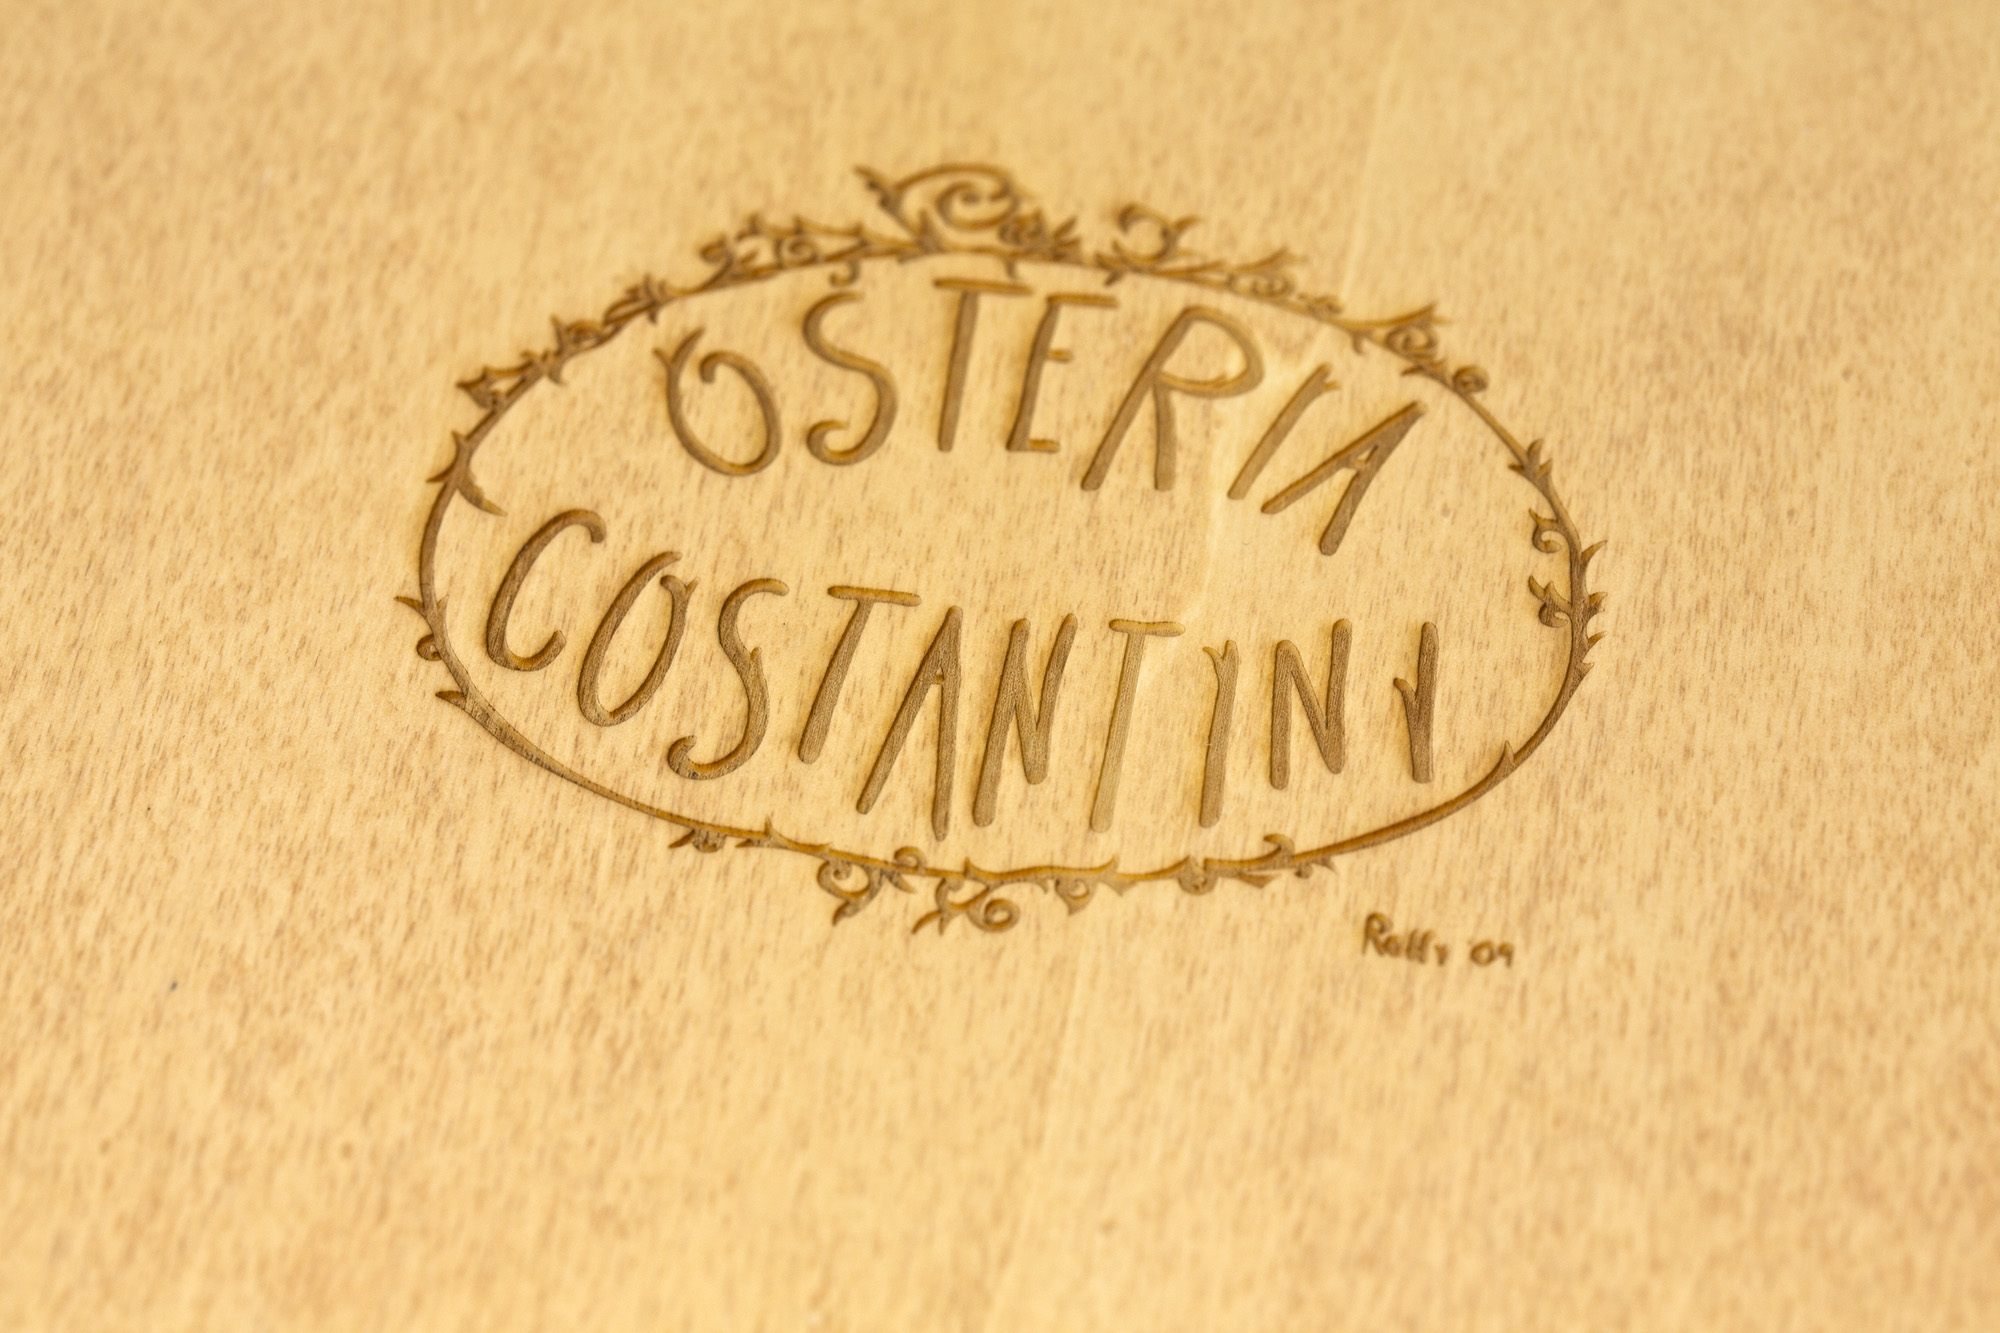 Portamenu Sperone - Osteria Costantini